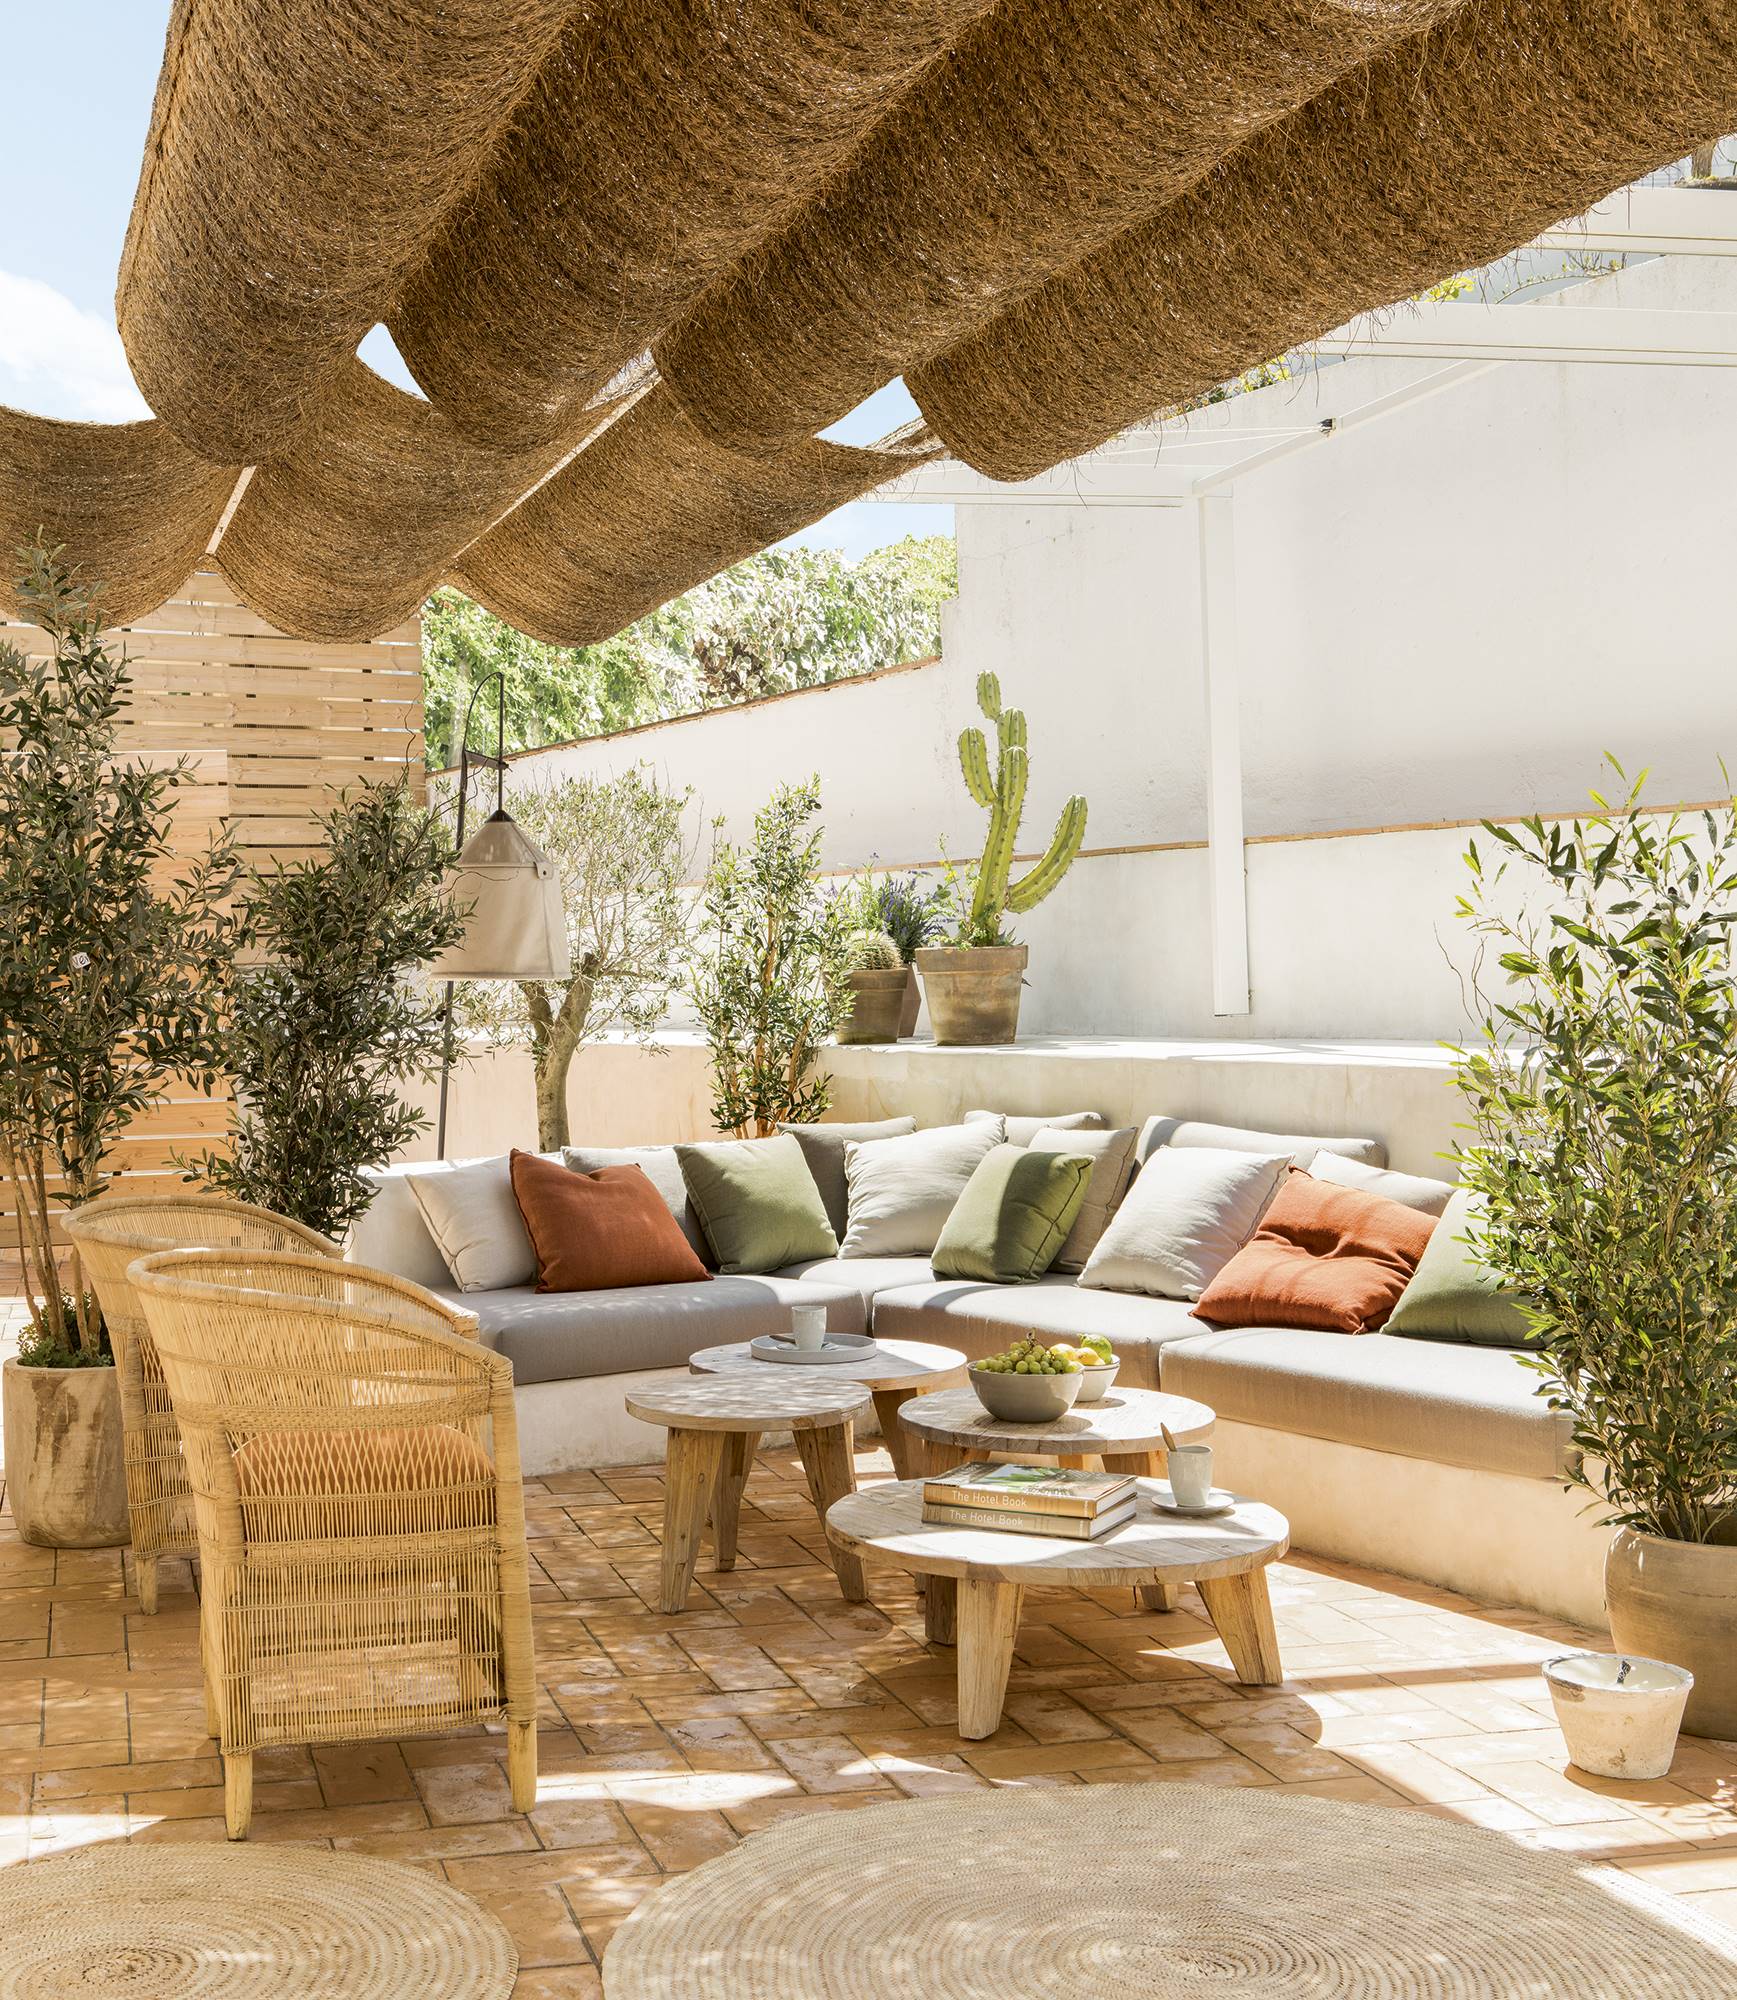 Terraza con butacas y un toldo de estilo mediterráneo. 